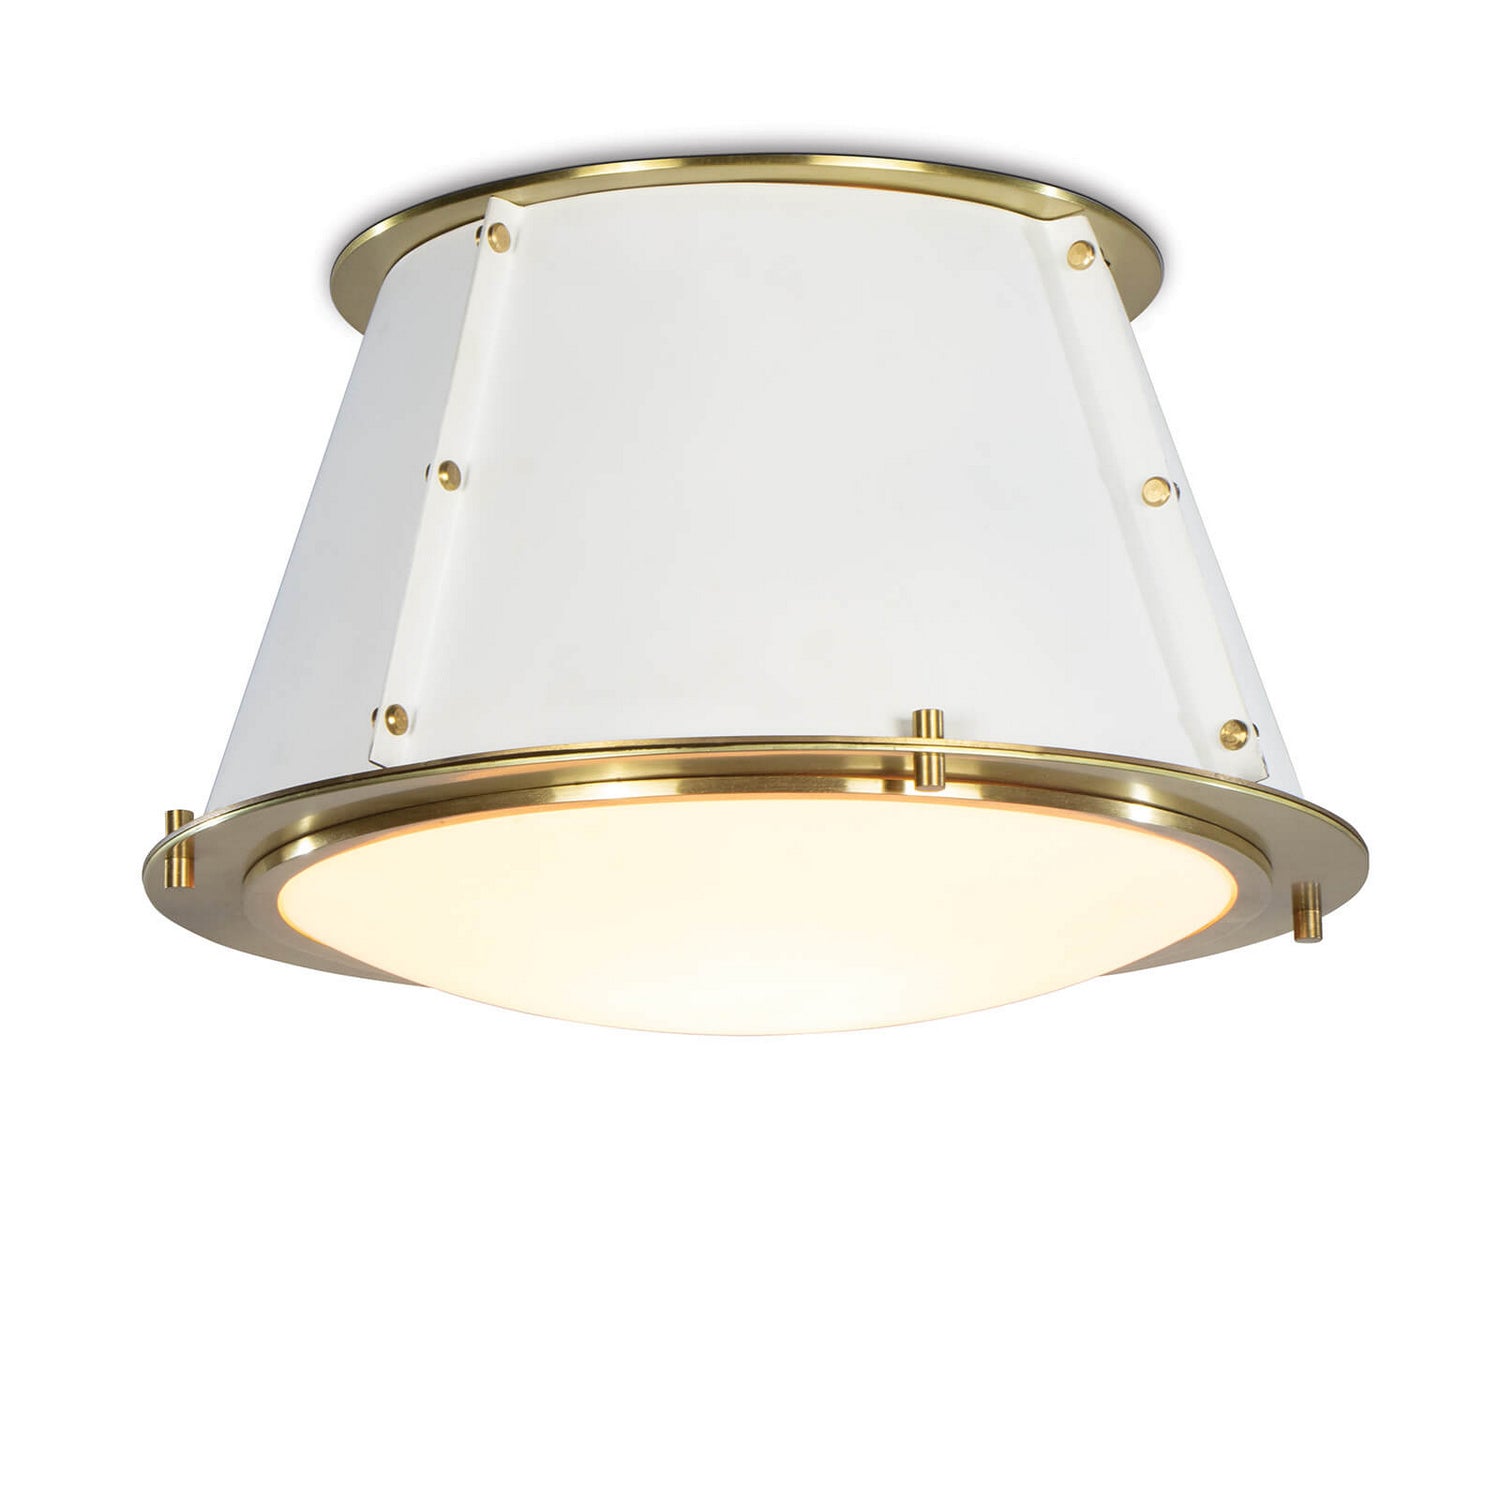 Regina Andrew - One Light Flush Mount - French - White- Union Lighting Luminaires Decor